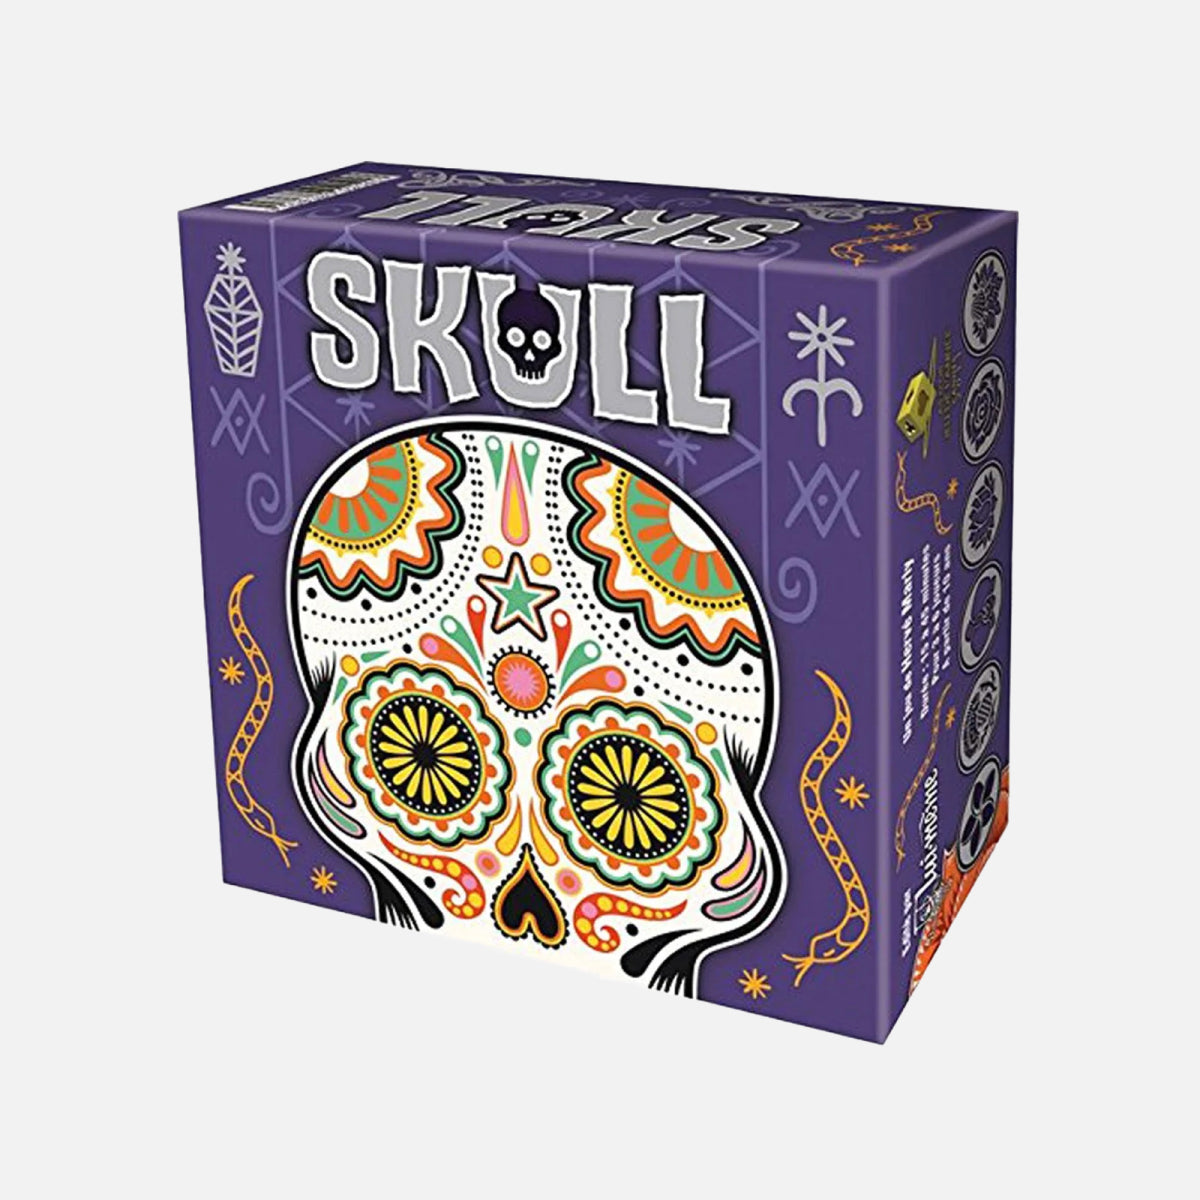 Skull board game